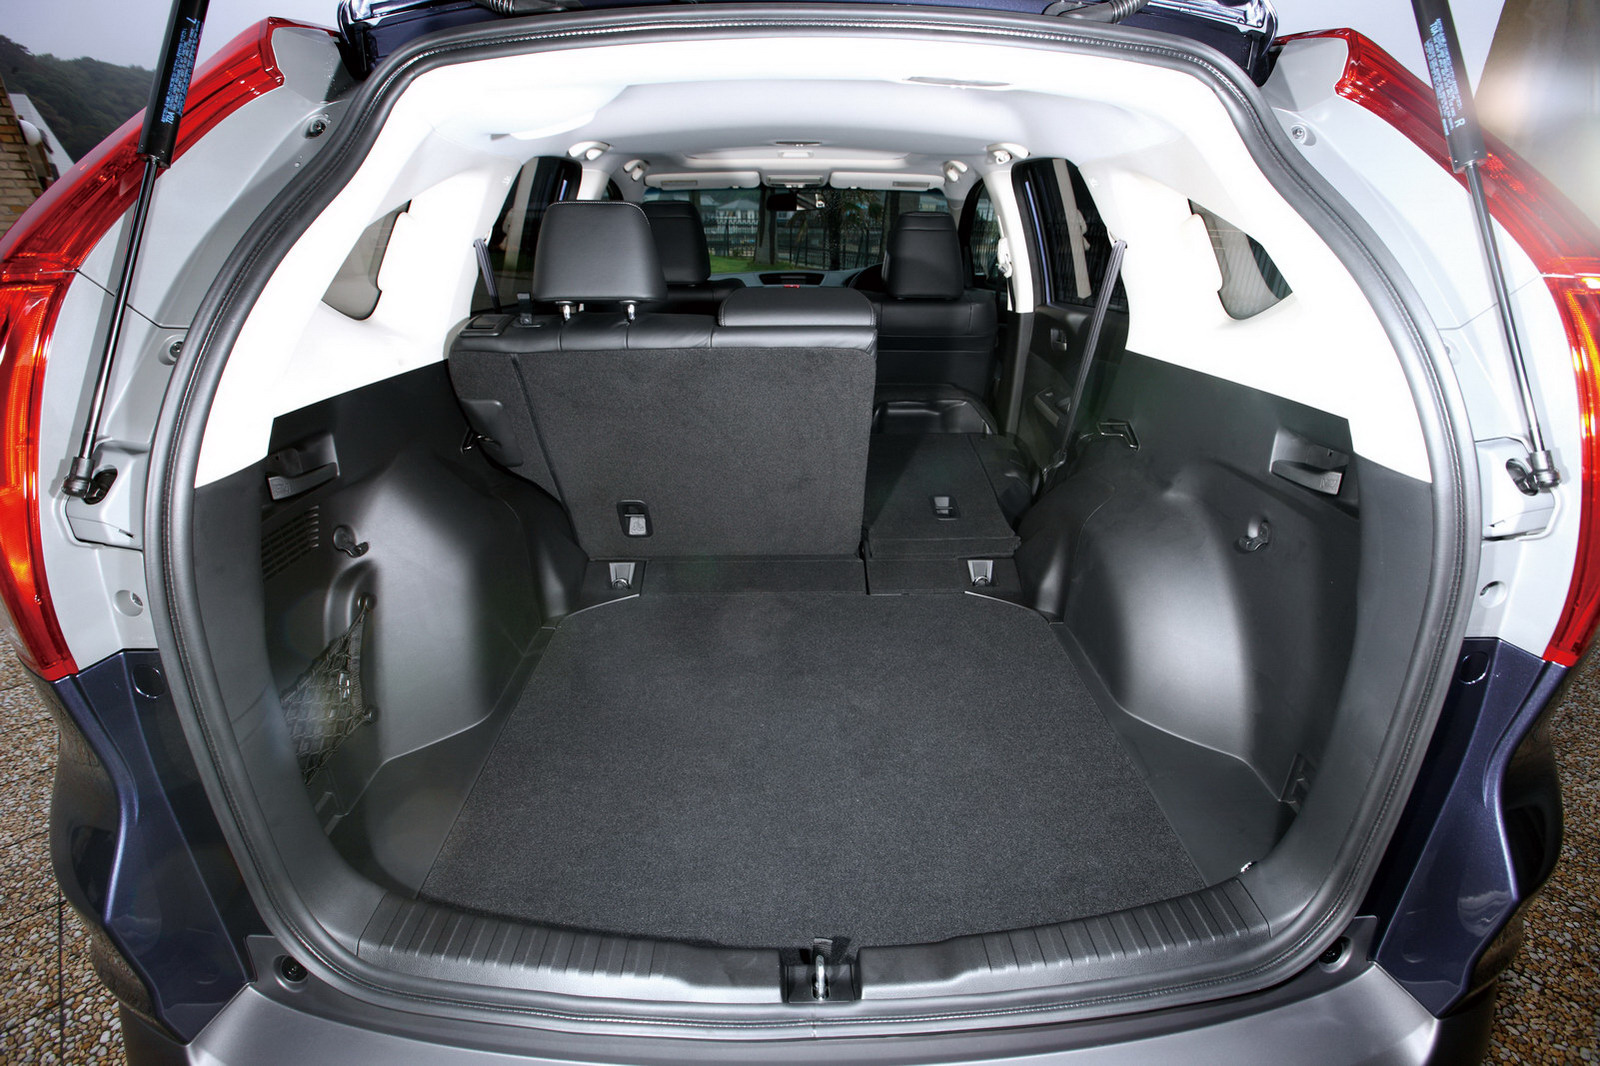 Багажник honda crv. Honda CR-V 2013 багажник. Honda CRV 4 багажник. Honda CR-V 3 багажник. Honda CRV 1 поколение багажник.